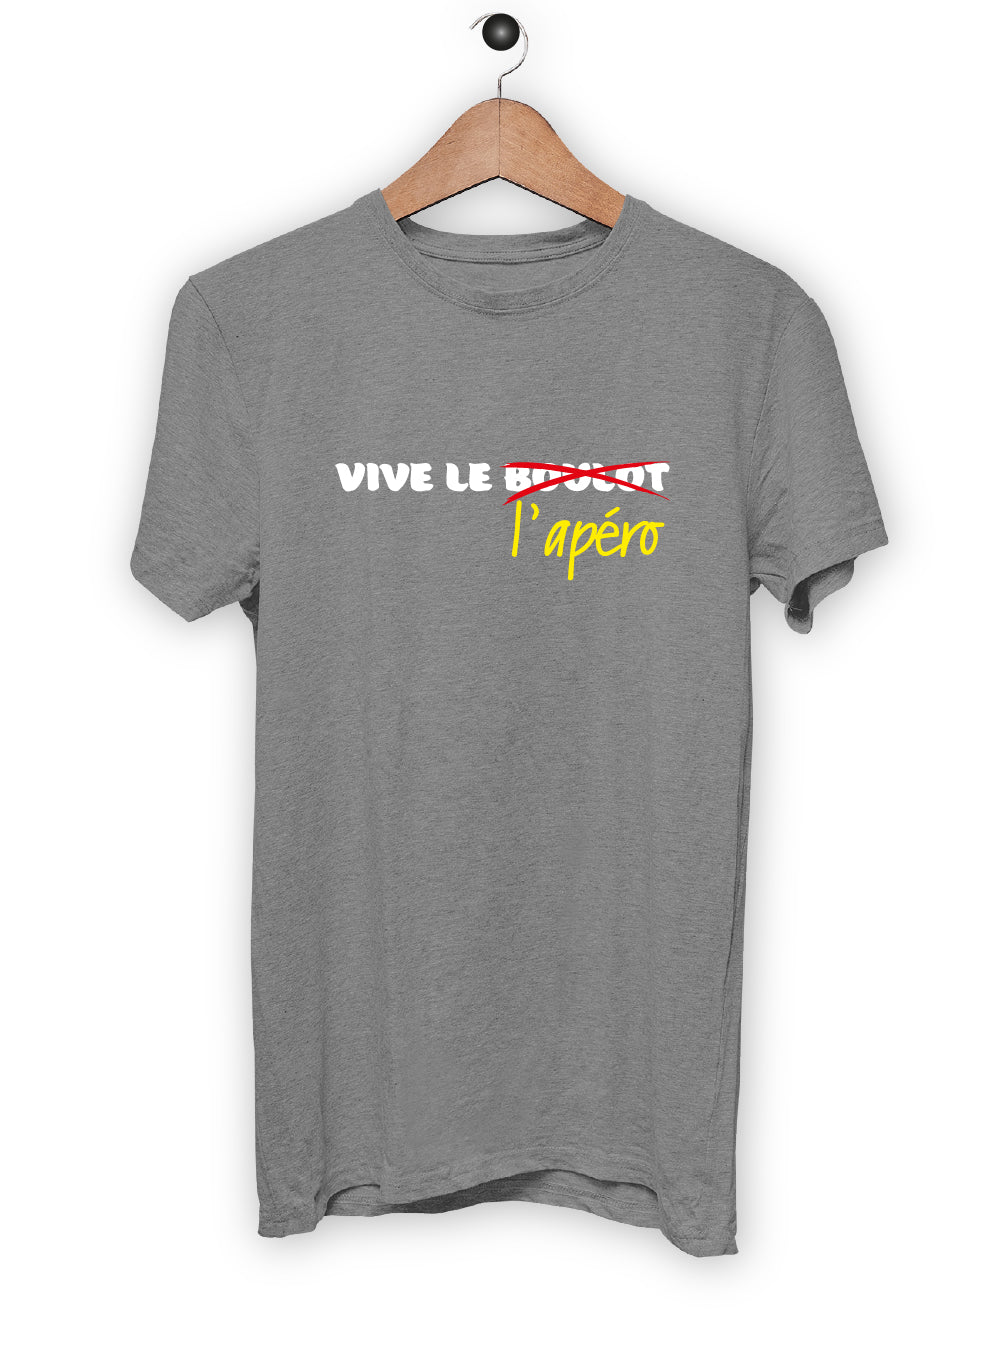 T-Shirt "VIVE LE BOULOT"